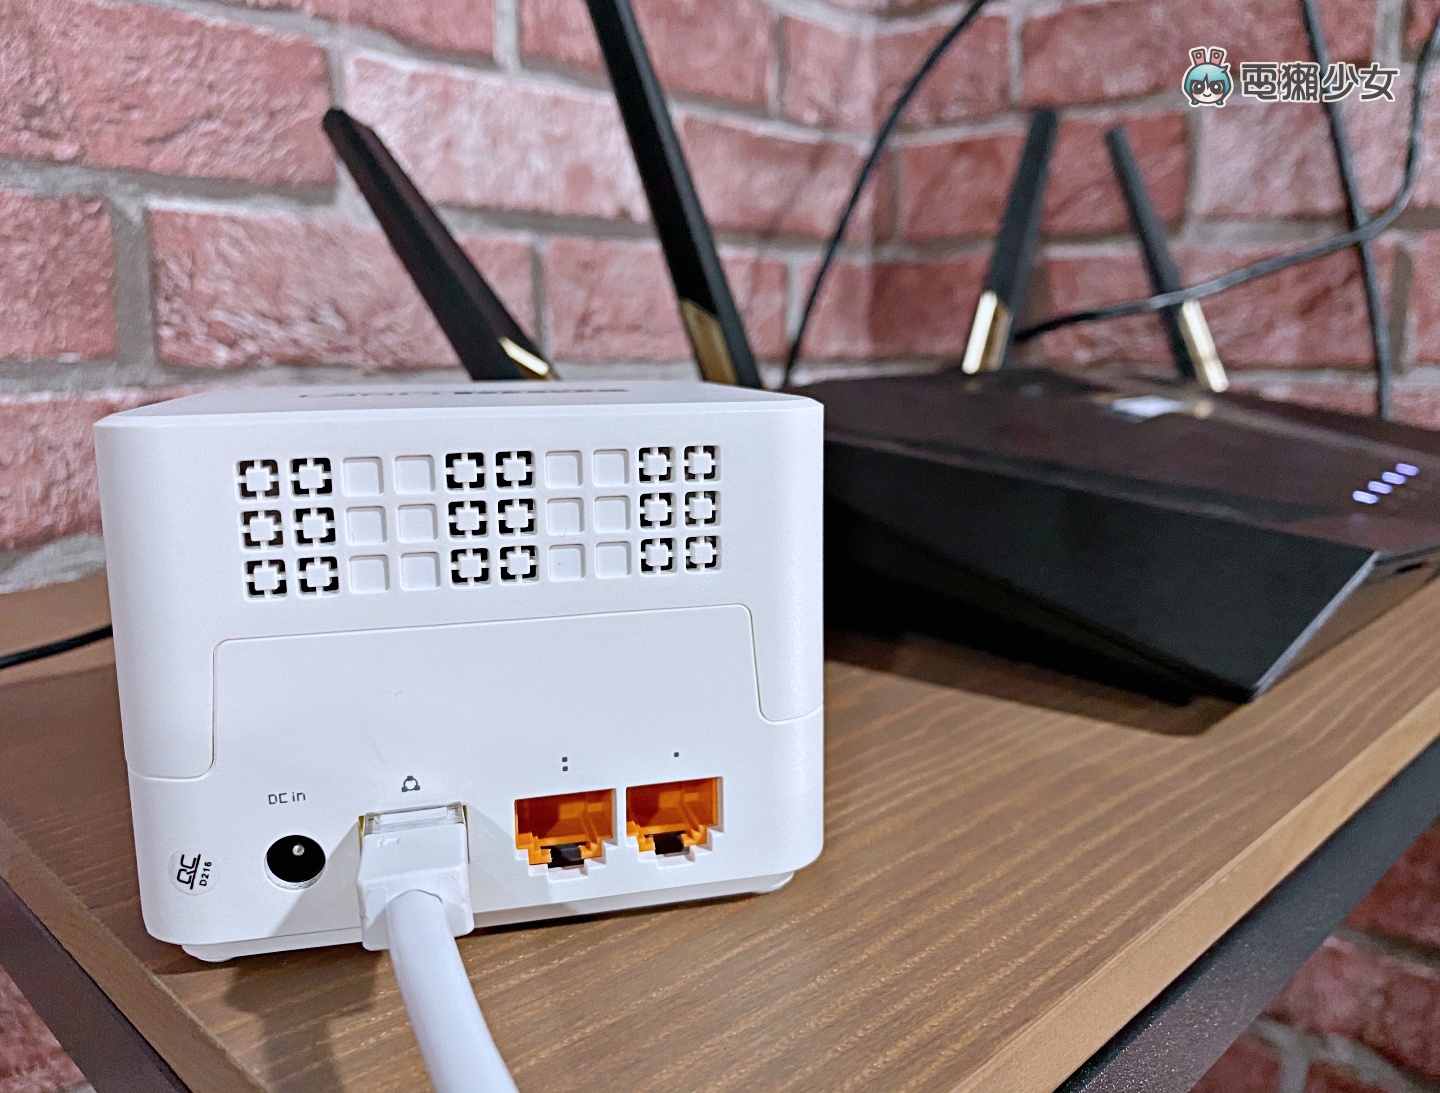 把&nbsp;Wi-Fi 訊號範圍變大吧！『 TOTOLINK T6 』Mesh 網狀路由器讓你家每個角落都收得到&nbsp;Wi-Fi！